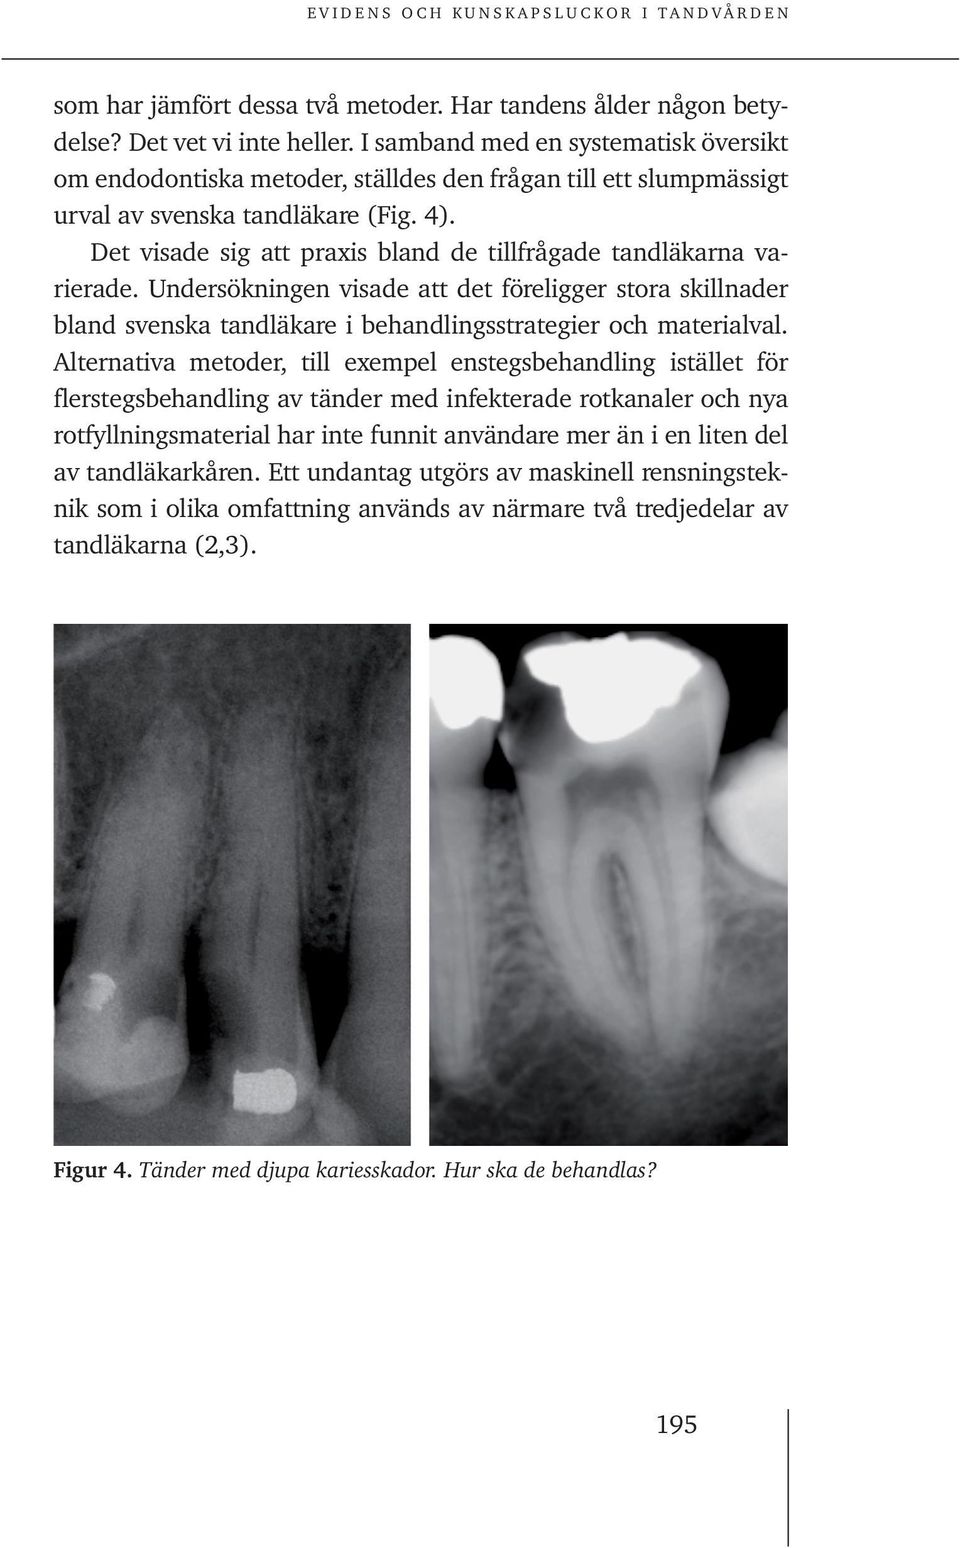 Det visade sig att praxis bland de tillfrågade tandläkarna varierade. Undersökningen visade att det föreligger stora skillnader bland svenska tandläkare i behandlingsstrategier och materialval.